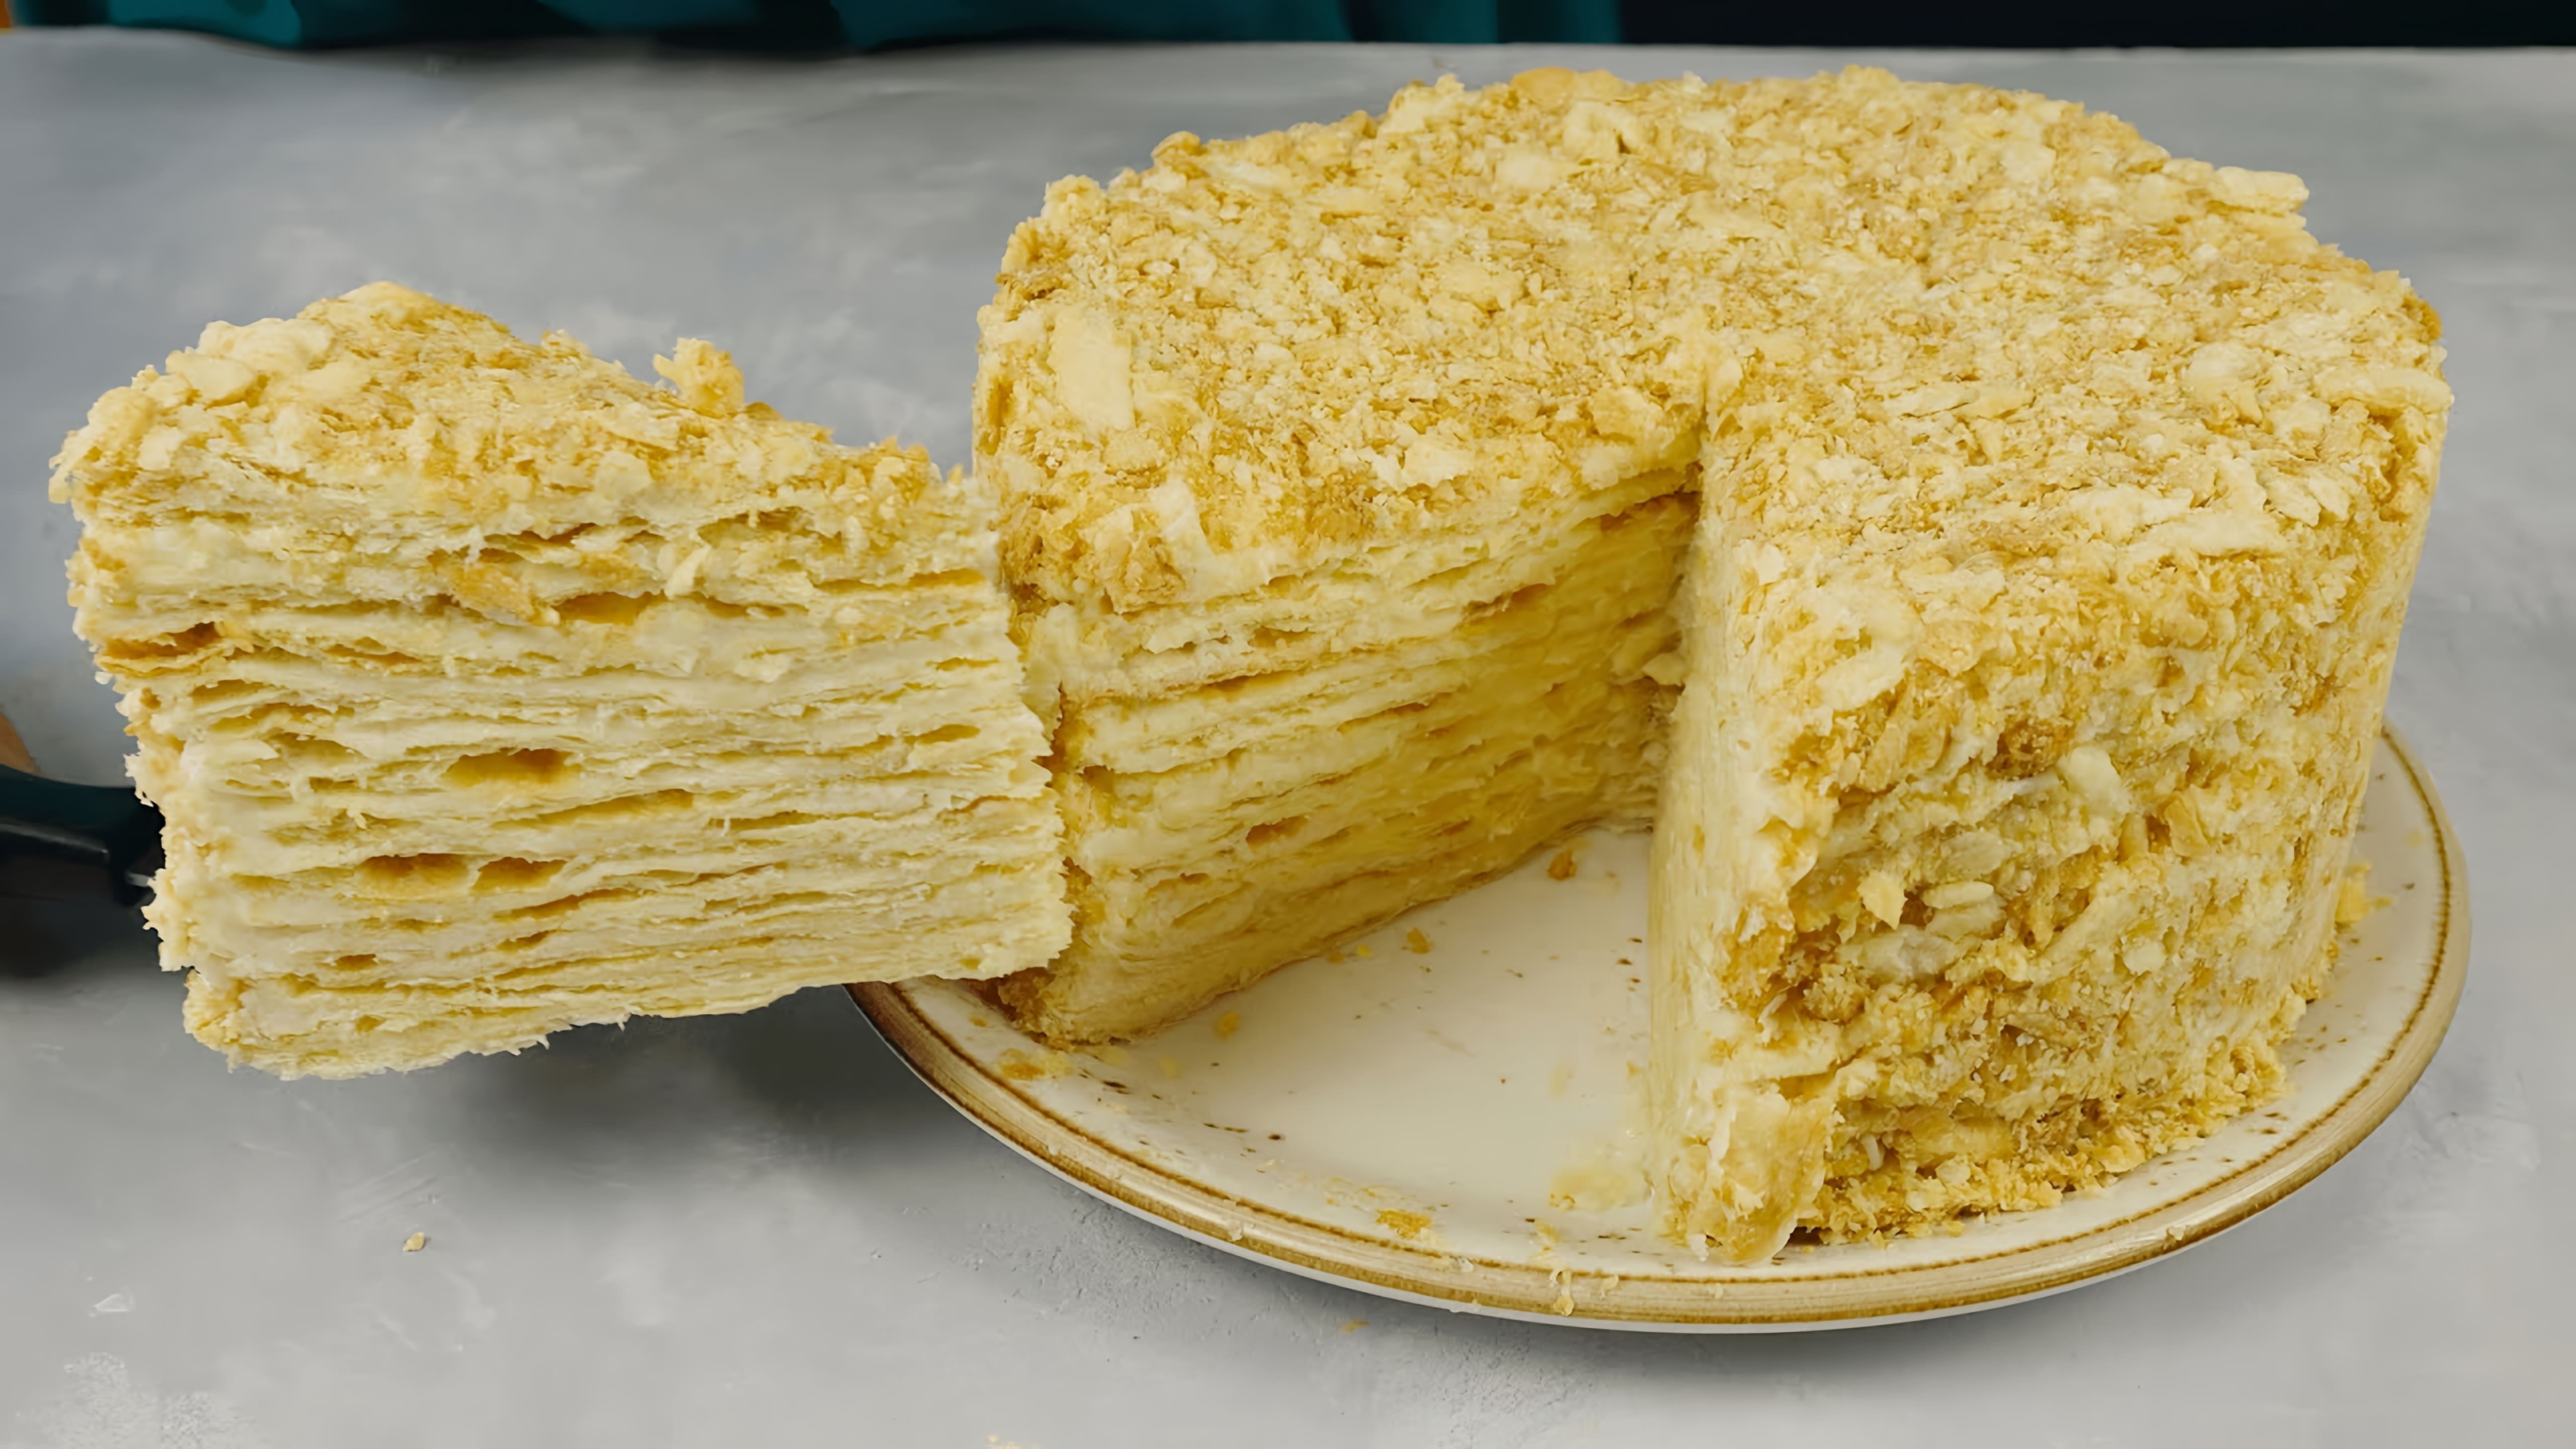 В этом видео демонстрируется рецепт приготовления домашнего торта "Наполеон" с заварным кремом